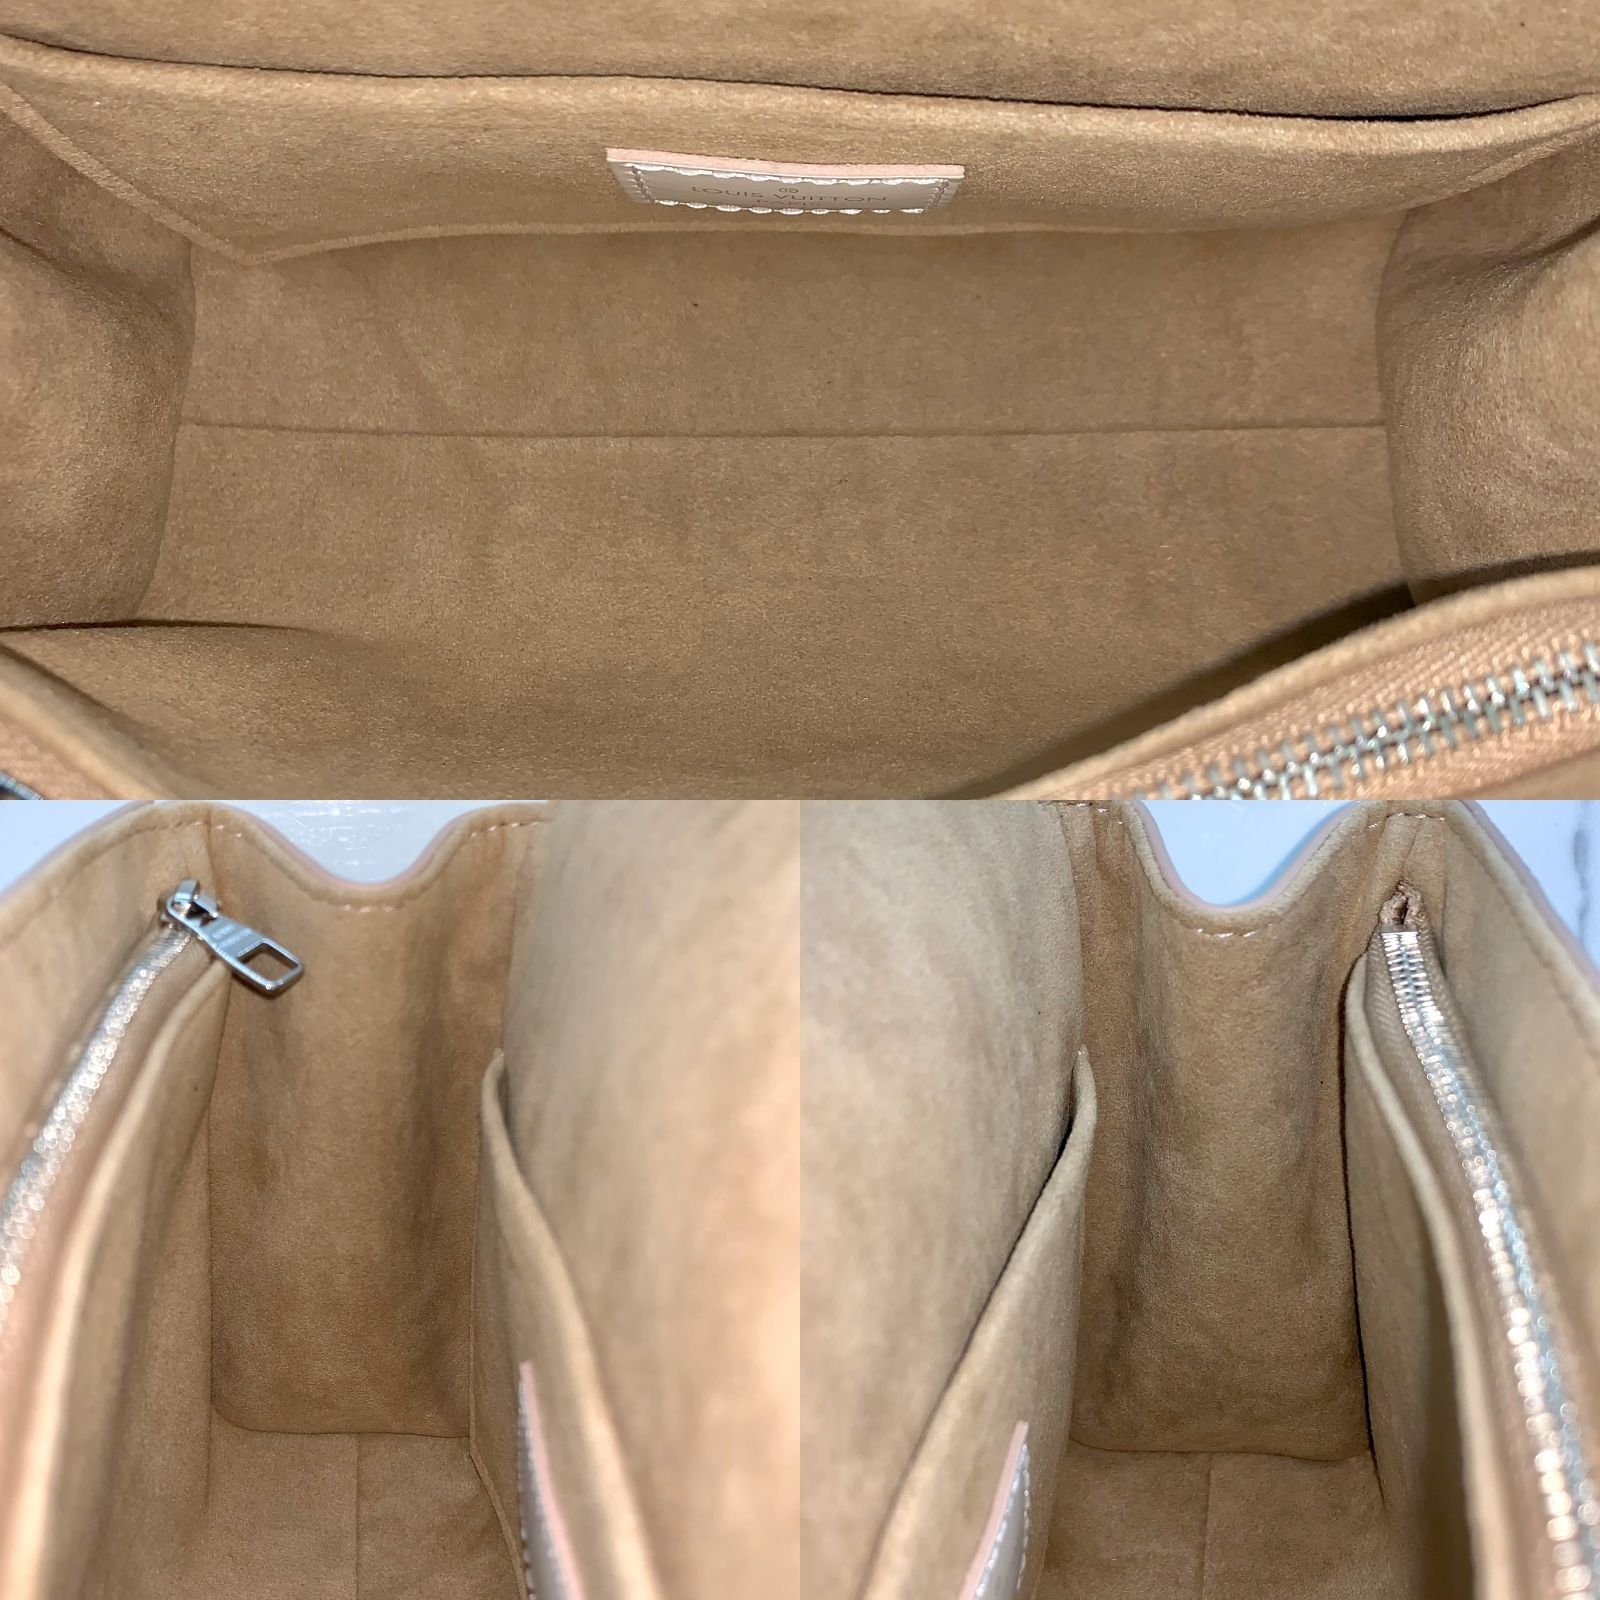 Louis Vuitton EPI 2021-22FW Cluny mini (M58931, M59108, M58928)